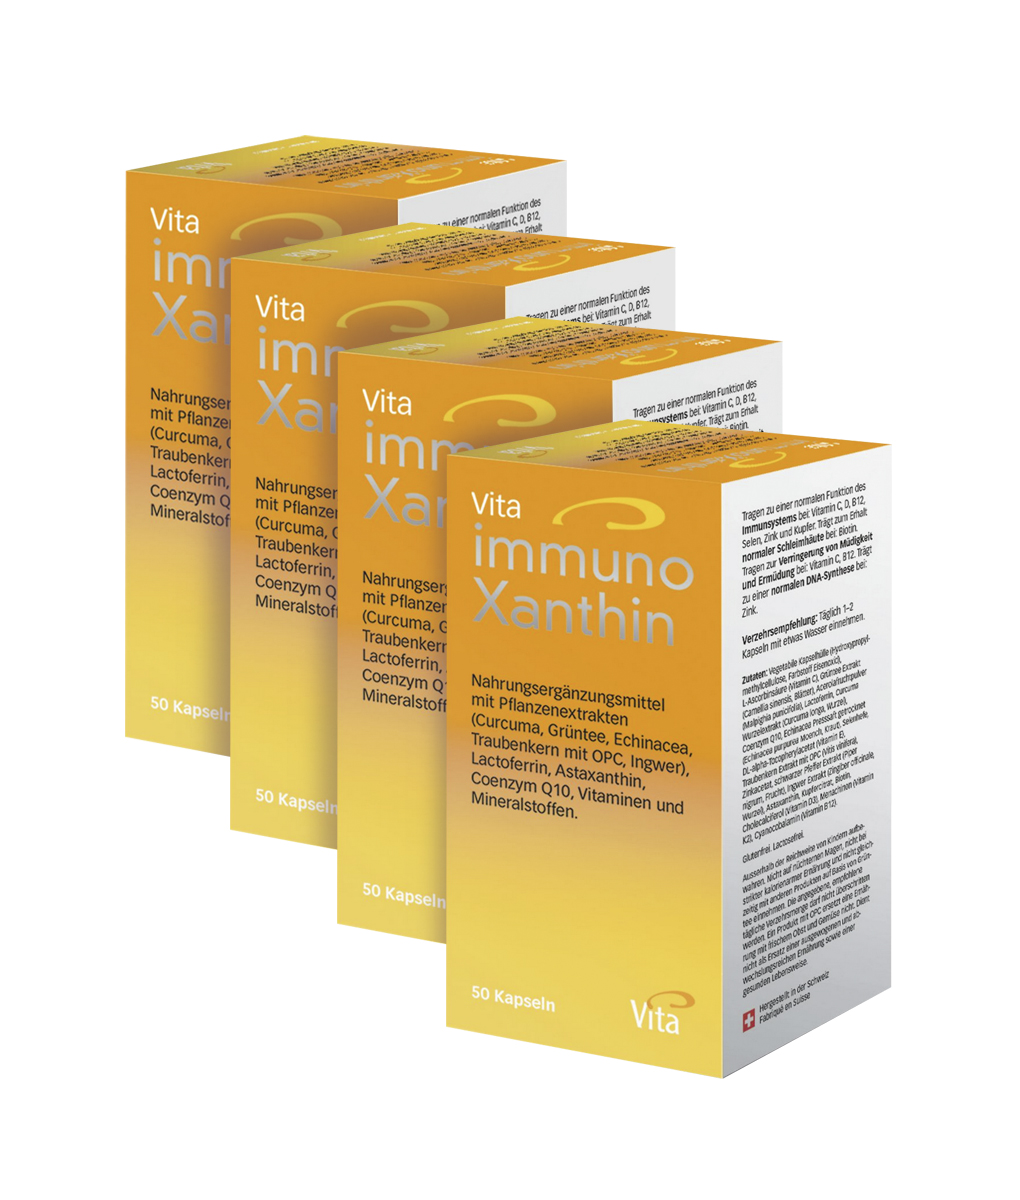 Vita immunoXanthin Four pack